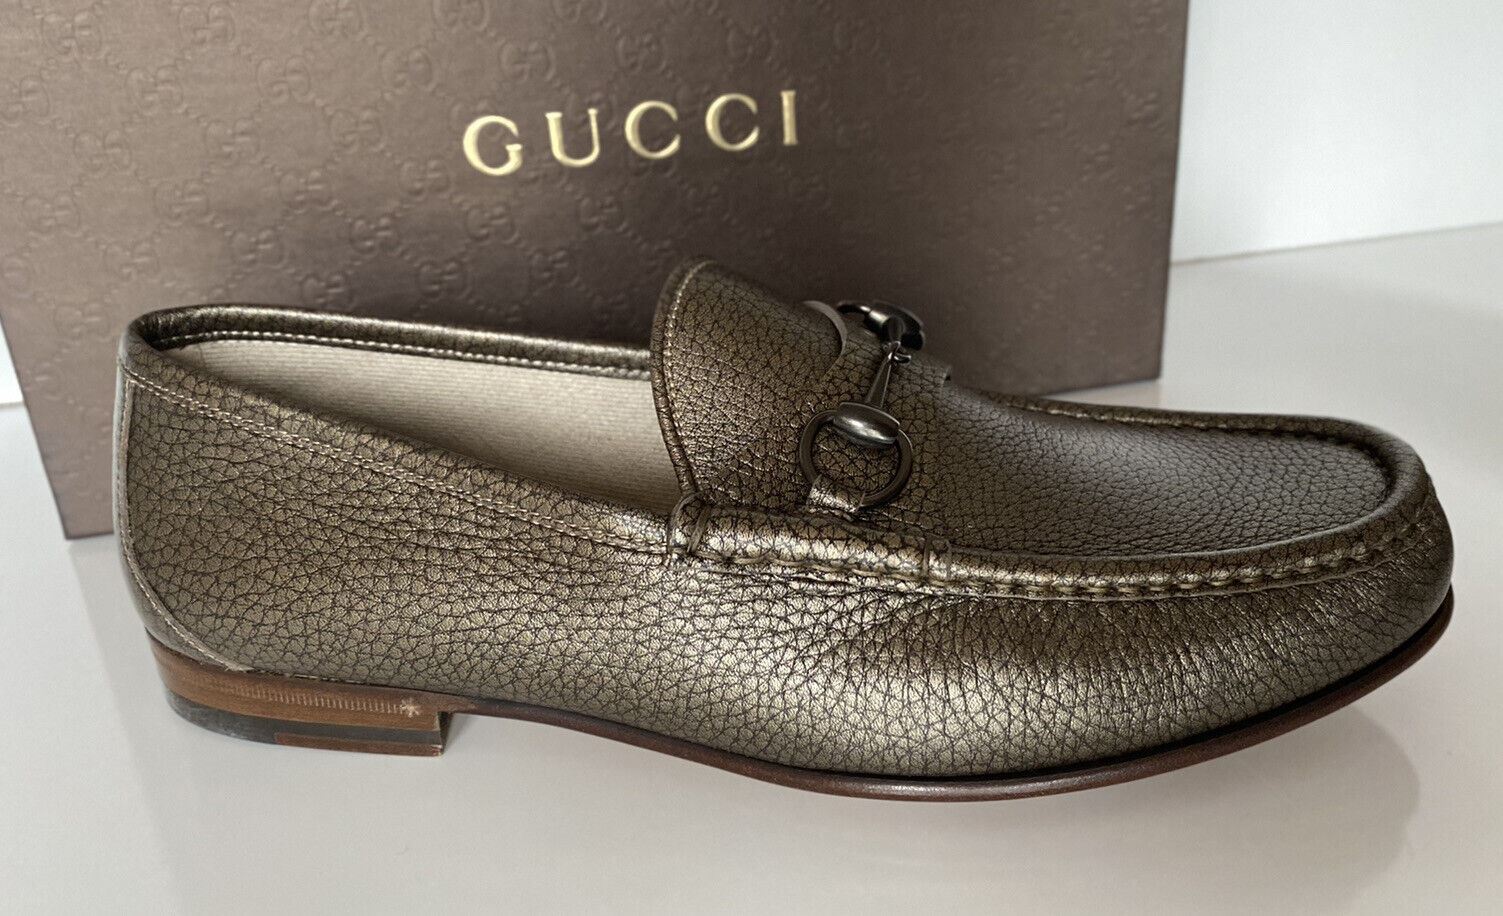 Мужские кожаные классические туфли NIB Gucci цвета металлик 11 США (Gucci 10) 357182 Италия 